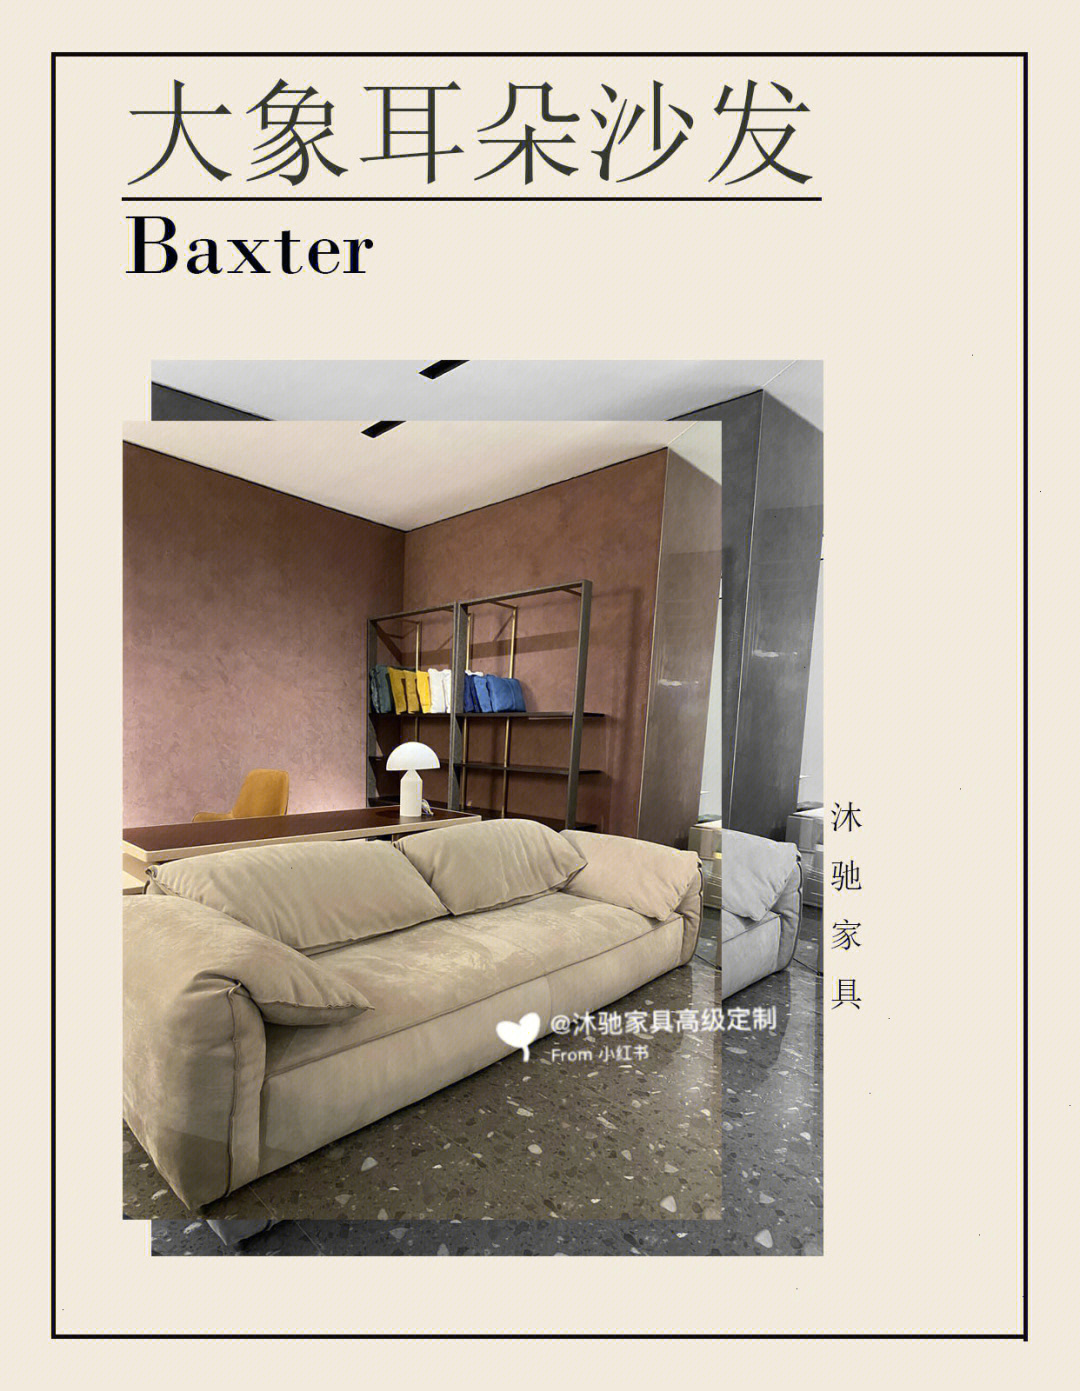 baxter中文图片